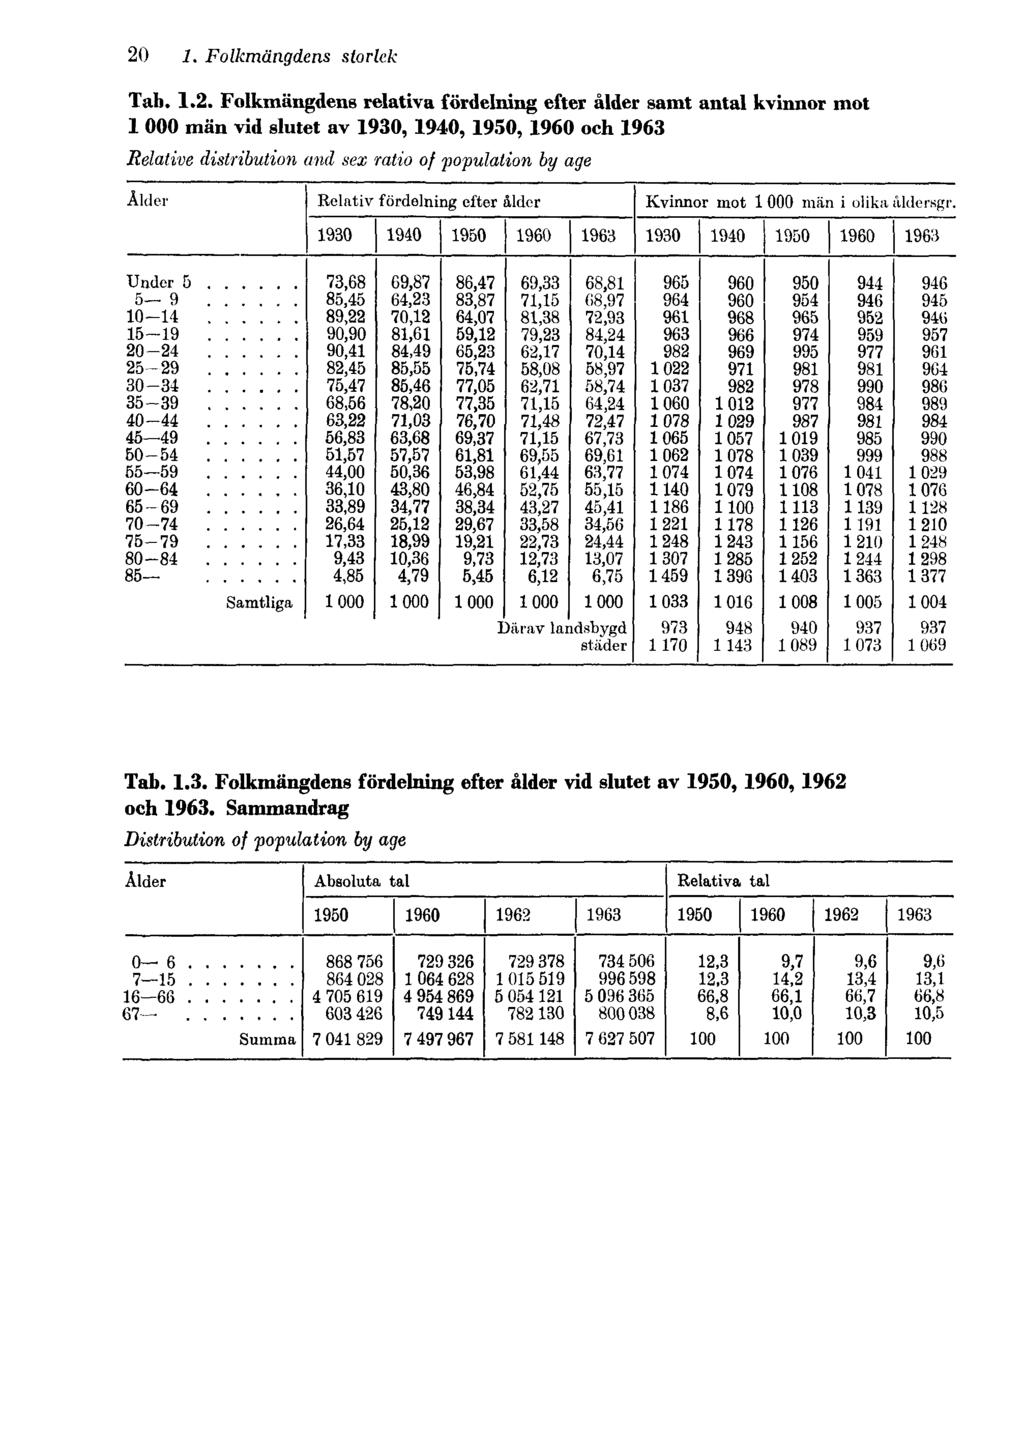 20 1. Folkmängdens storlek Tab. 1.2. Folkmängdens relativa fördelning efter ålder samt antal kvinnor mot 1000 män vid slutet av 1930, 1940, 1950, 1960 och 1963 Relative